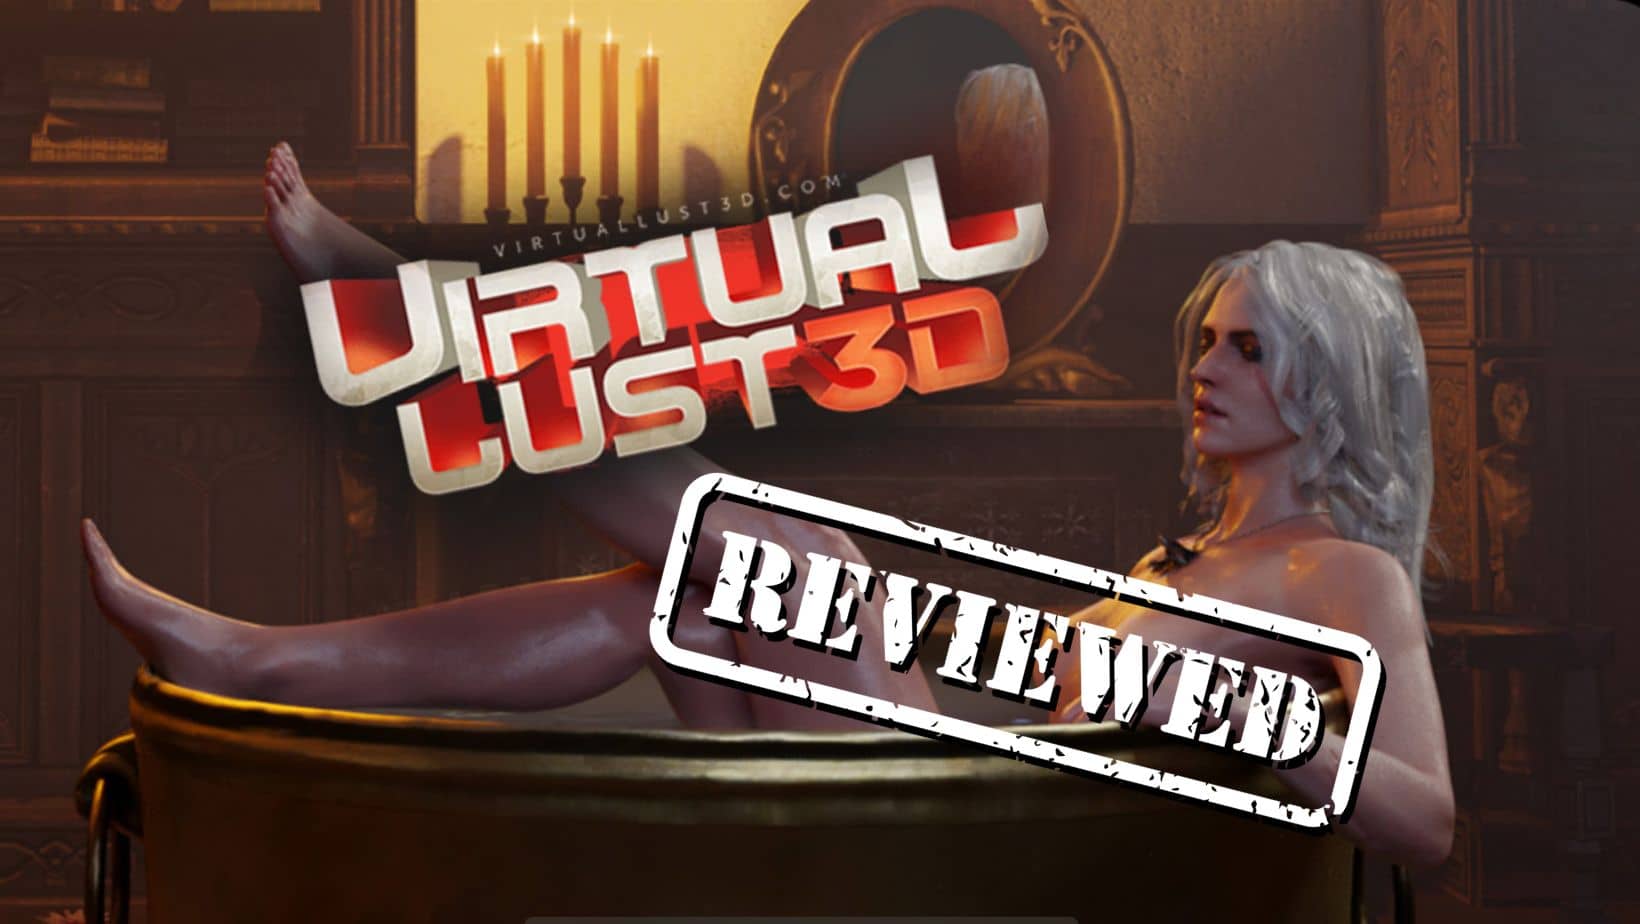 Virtual Lust 3D review – is it a legit website?